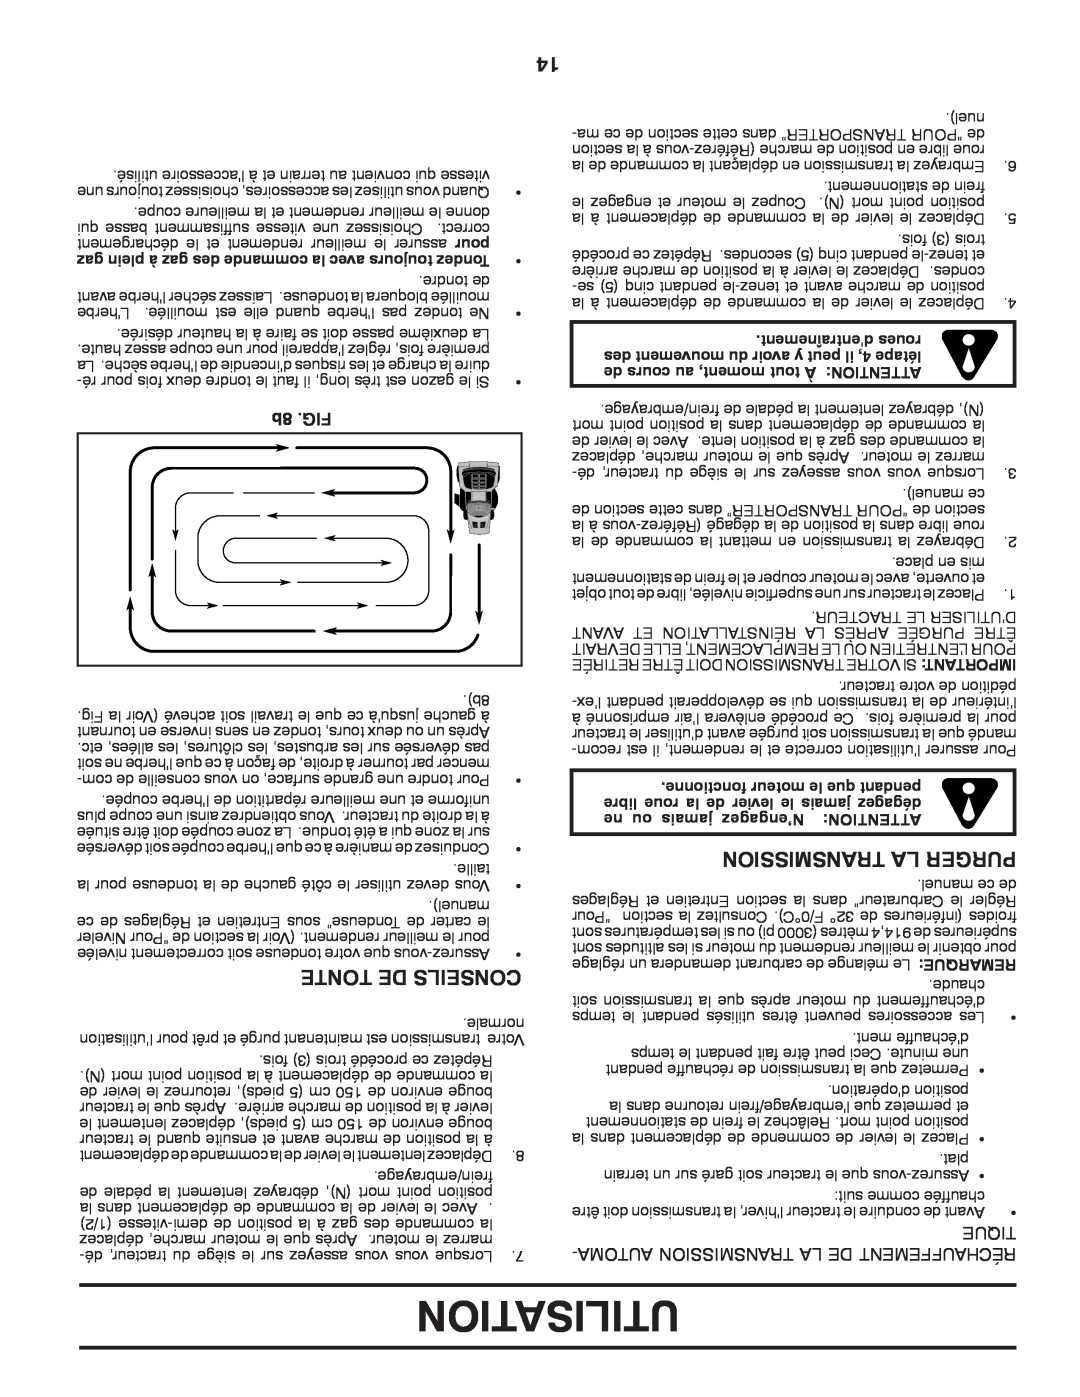 Murray 96017000700 manual Utilisation, Tonte De Conseils, Transmission La Purger, 8b .FIG, dentraînement roues 